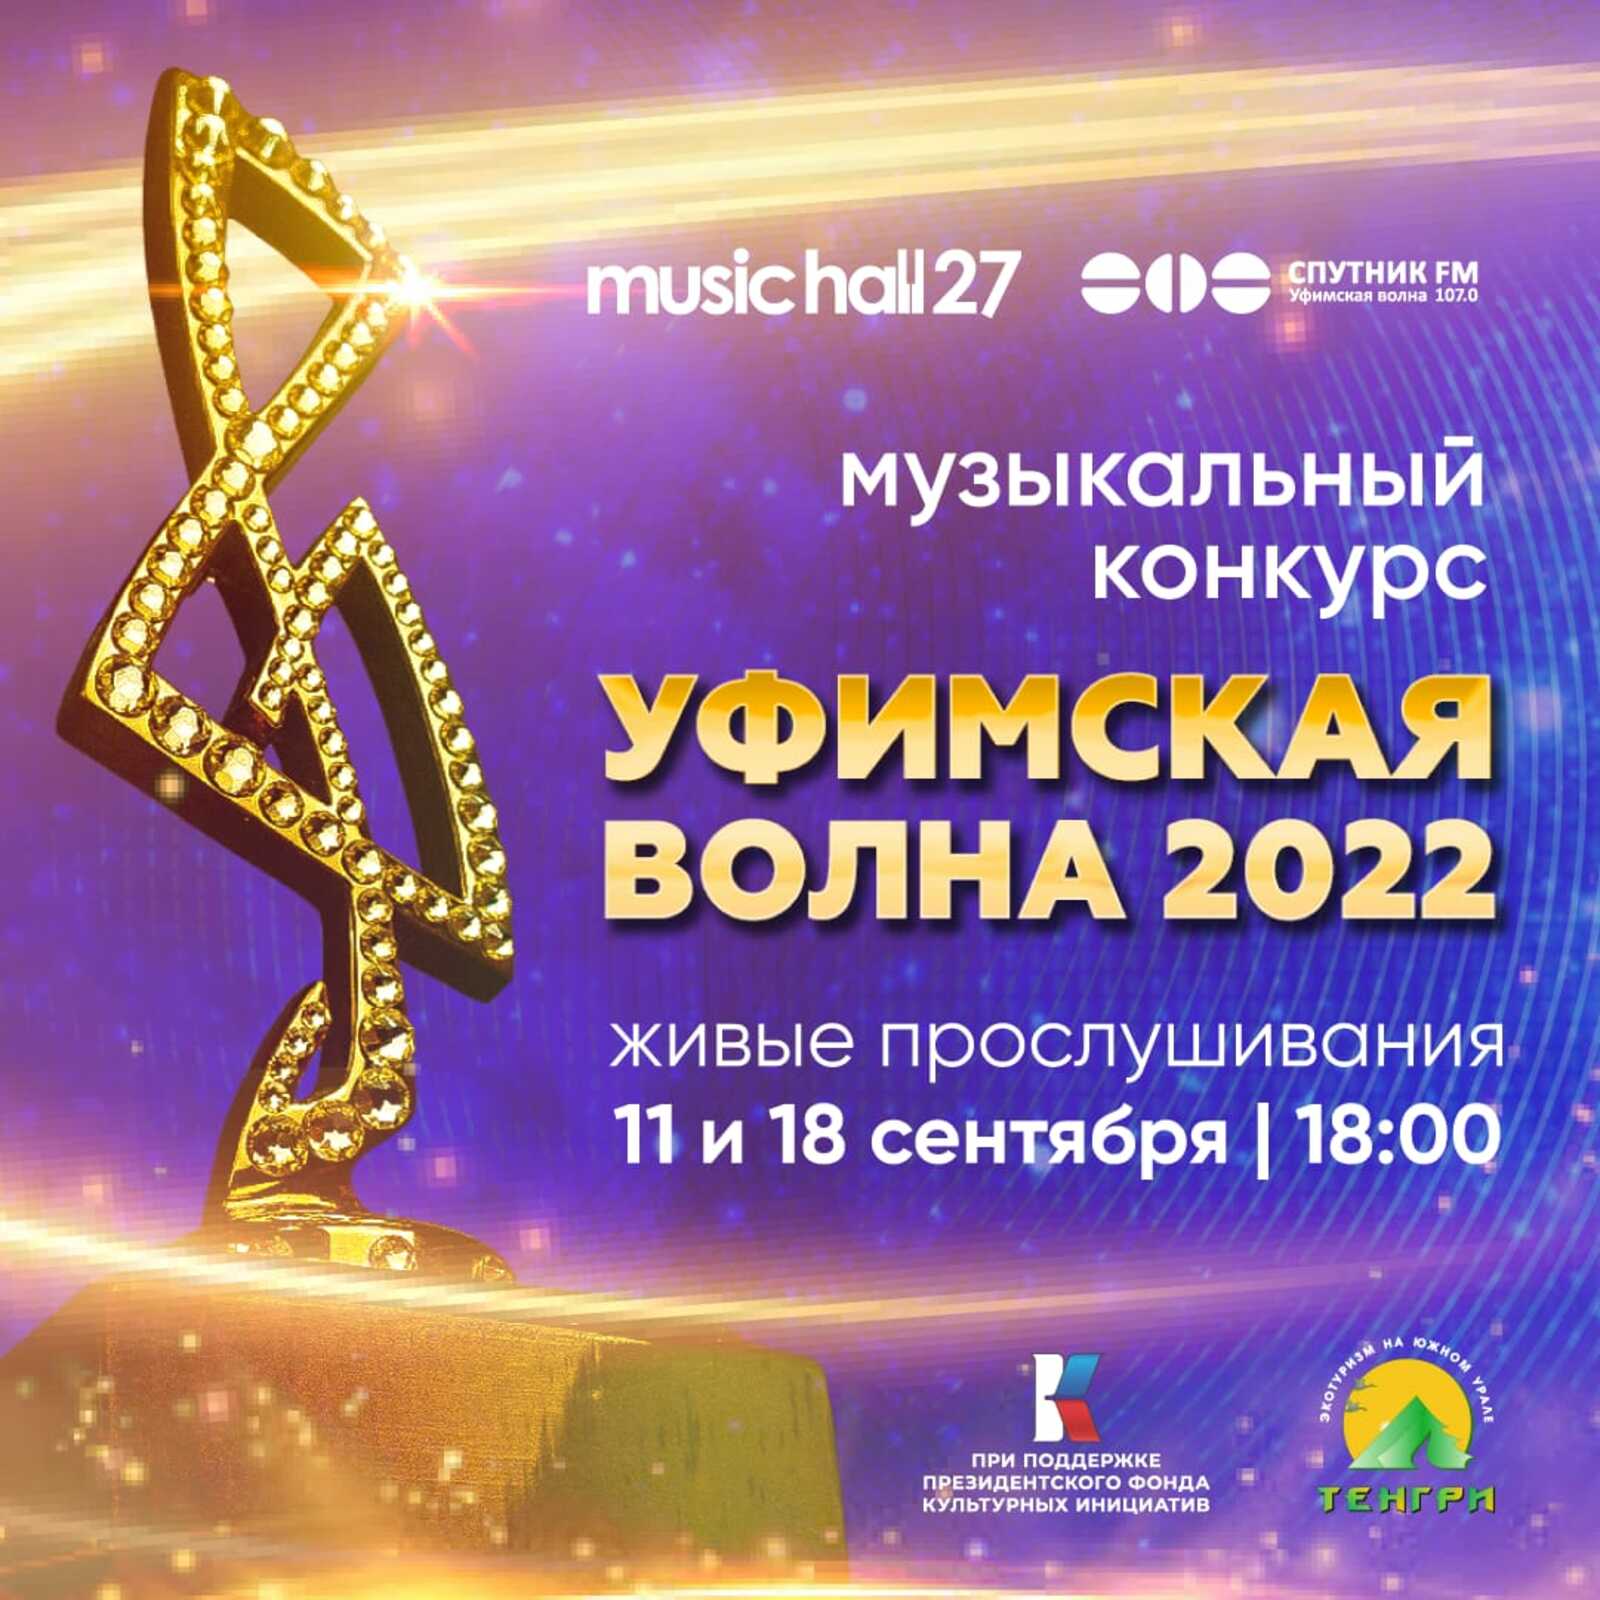 Завершен прием заявок на 11-й сезон музыкального конкурса «Уфимская Волна 2022»!